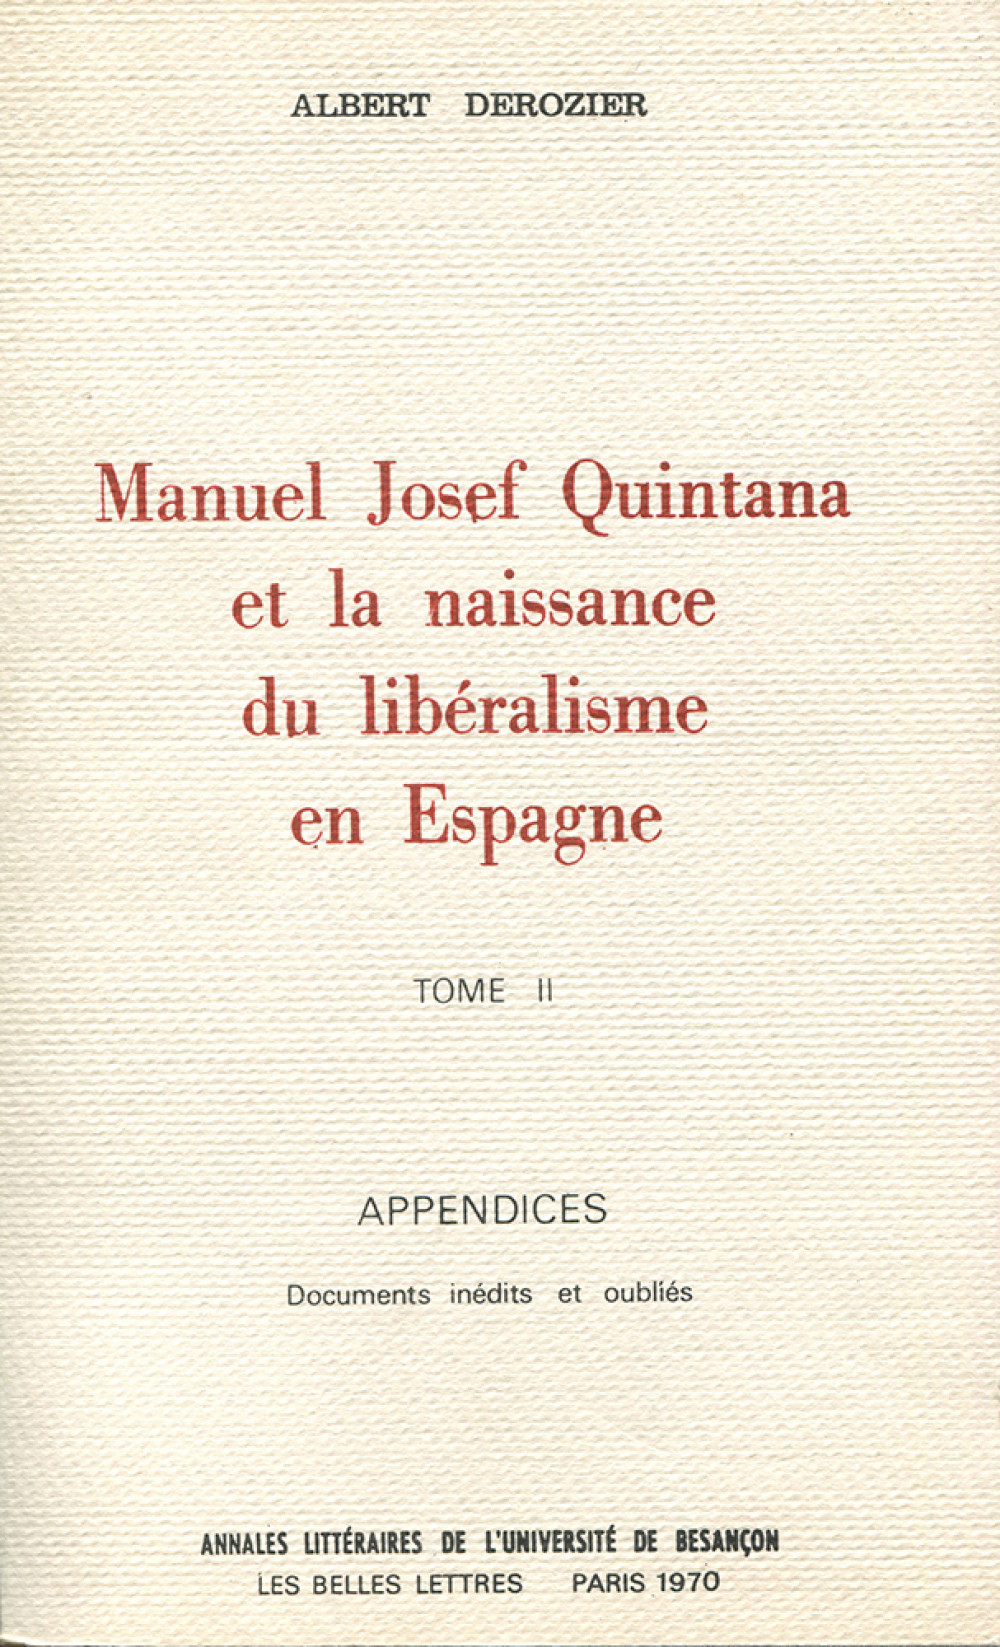 Manuel Josef Quintana et la naissance du libéralisme en Espagne. Tome II